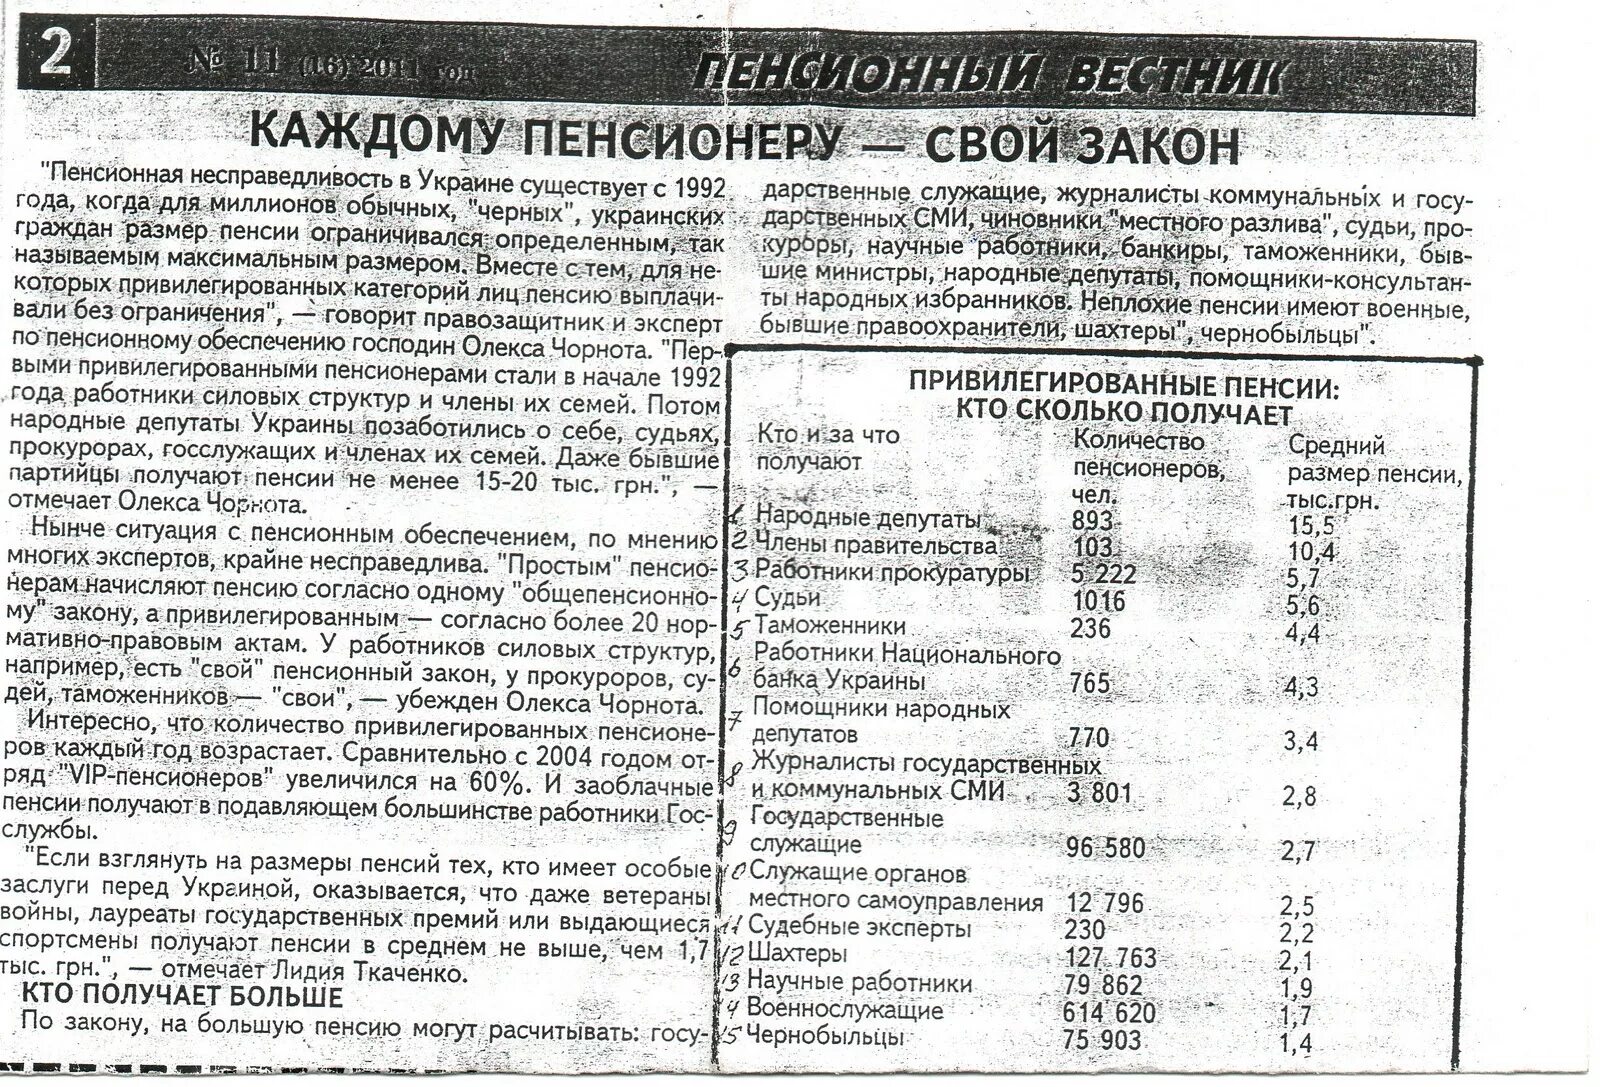 Чернобыльская пенсия Размеры. Размер гос пенсии в Чернобыльской зоне. Сколько получают пенсию пенсионеры чернобыльцы. Пенсионное обеспечение чернобыльцев.